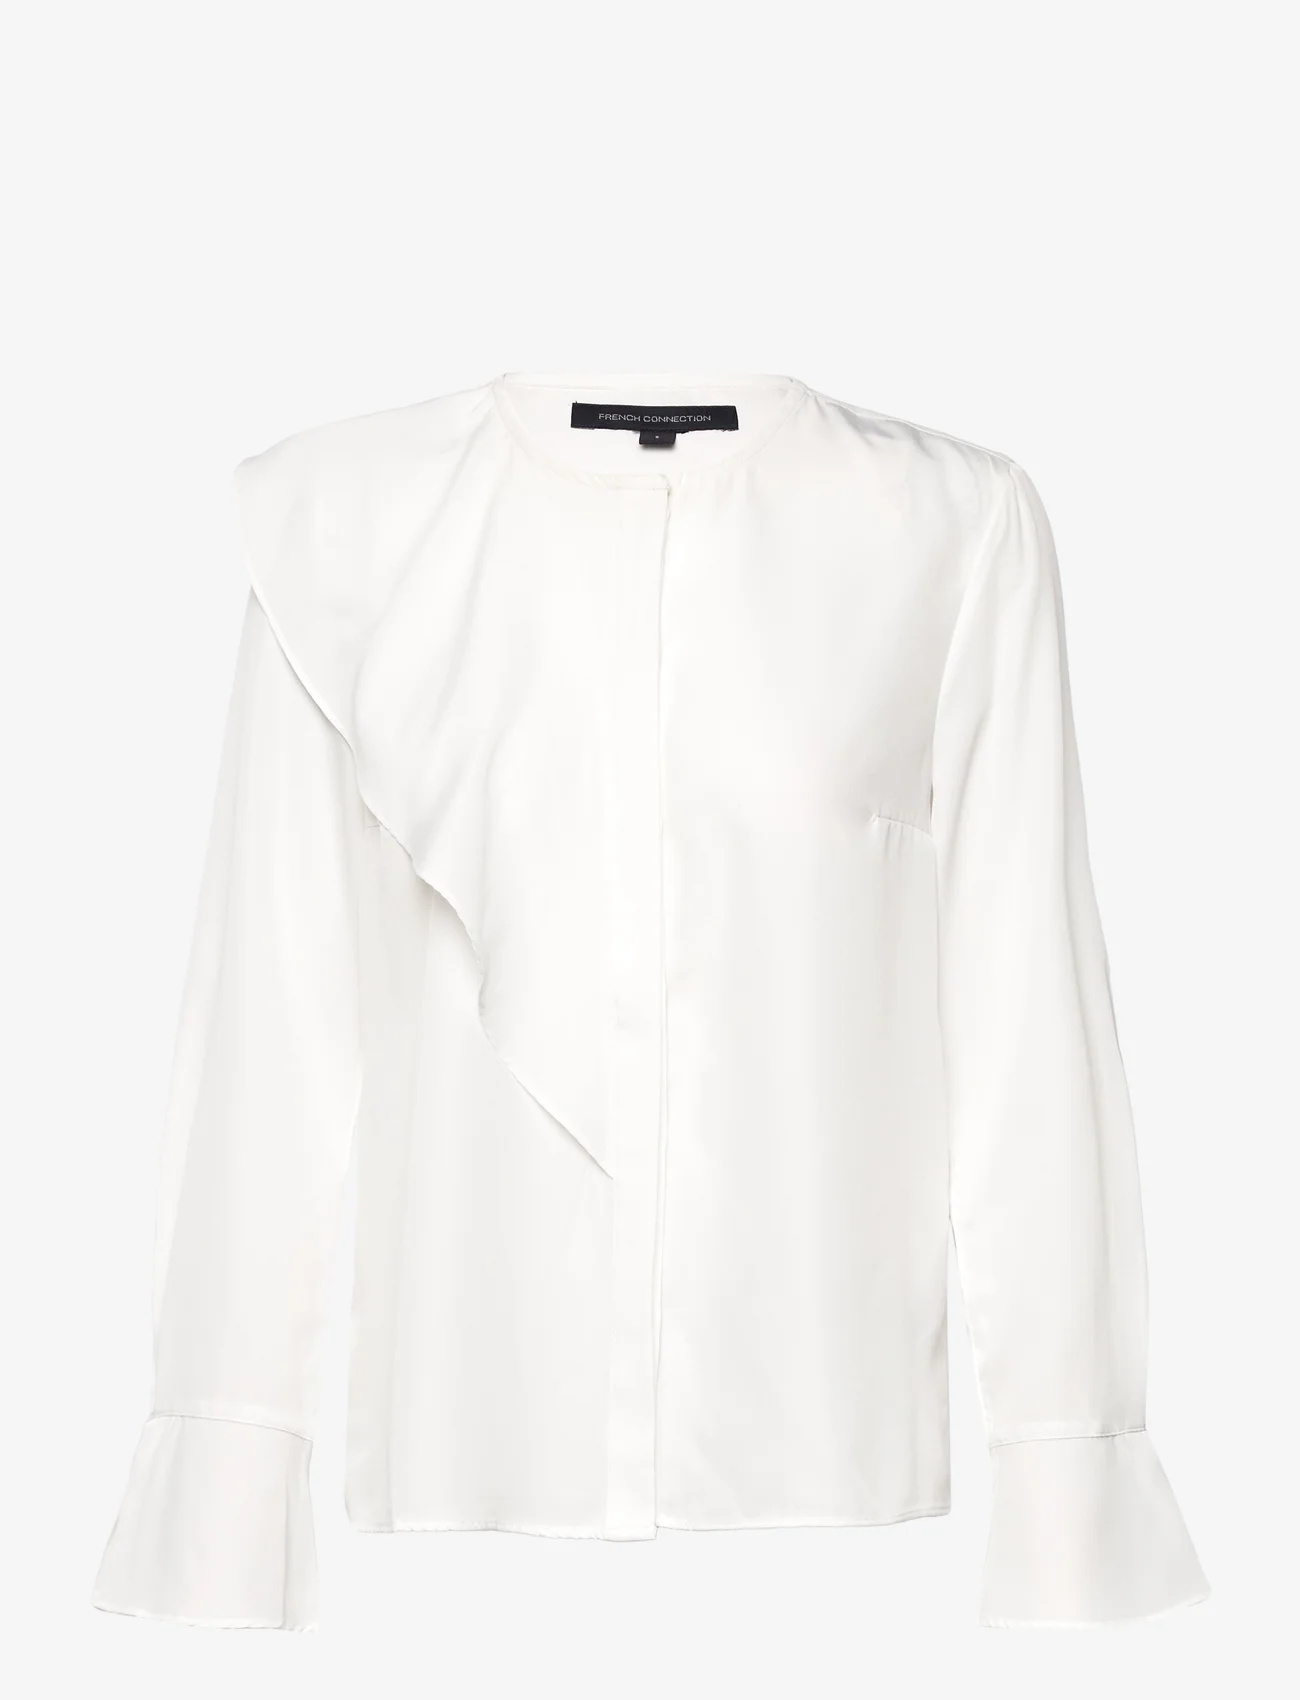 French Connection - CREPE LIGHT ASYMM FRILL SHIRT - bluzki z długimi rękawami - winter white - 0